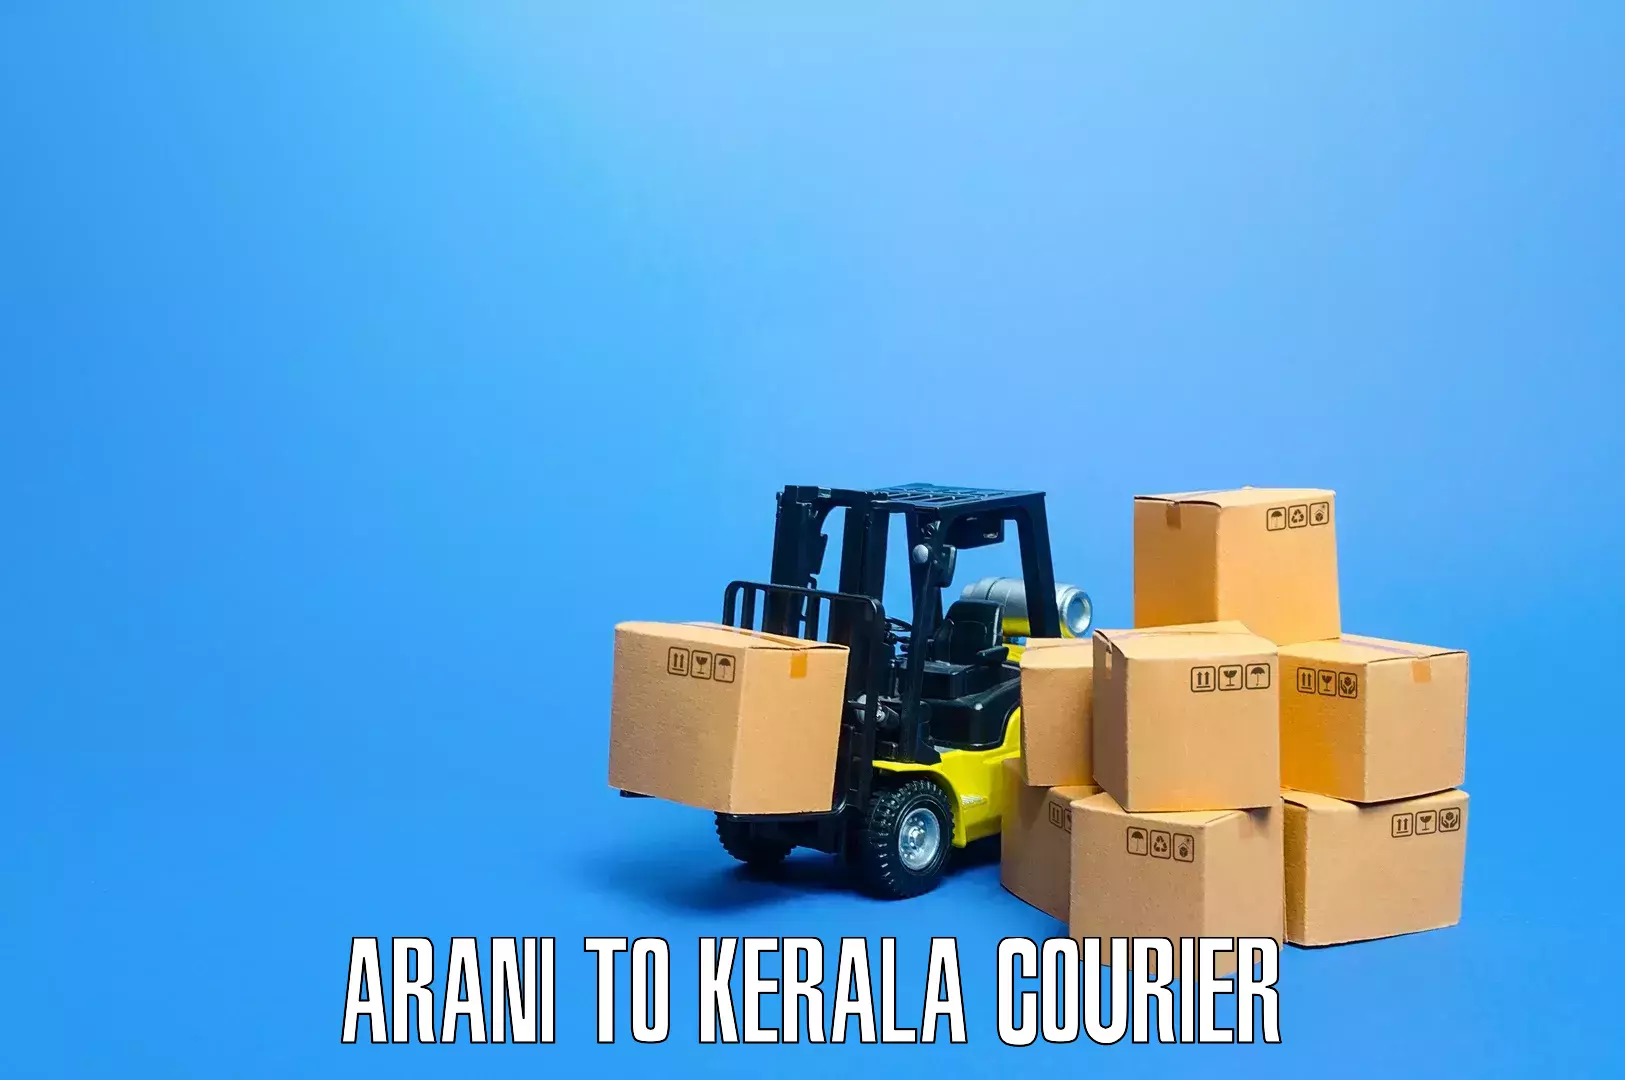 Stress-free furniture moving in Arani to Kerala